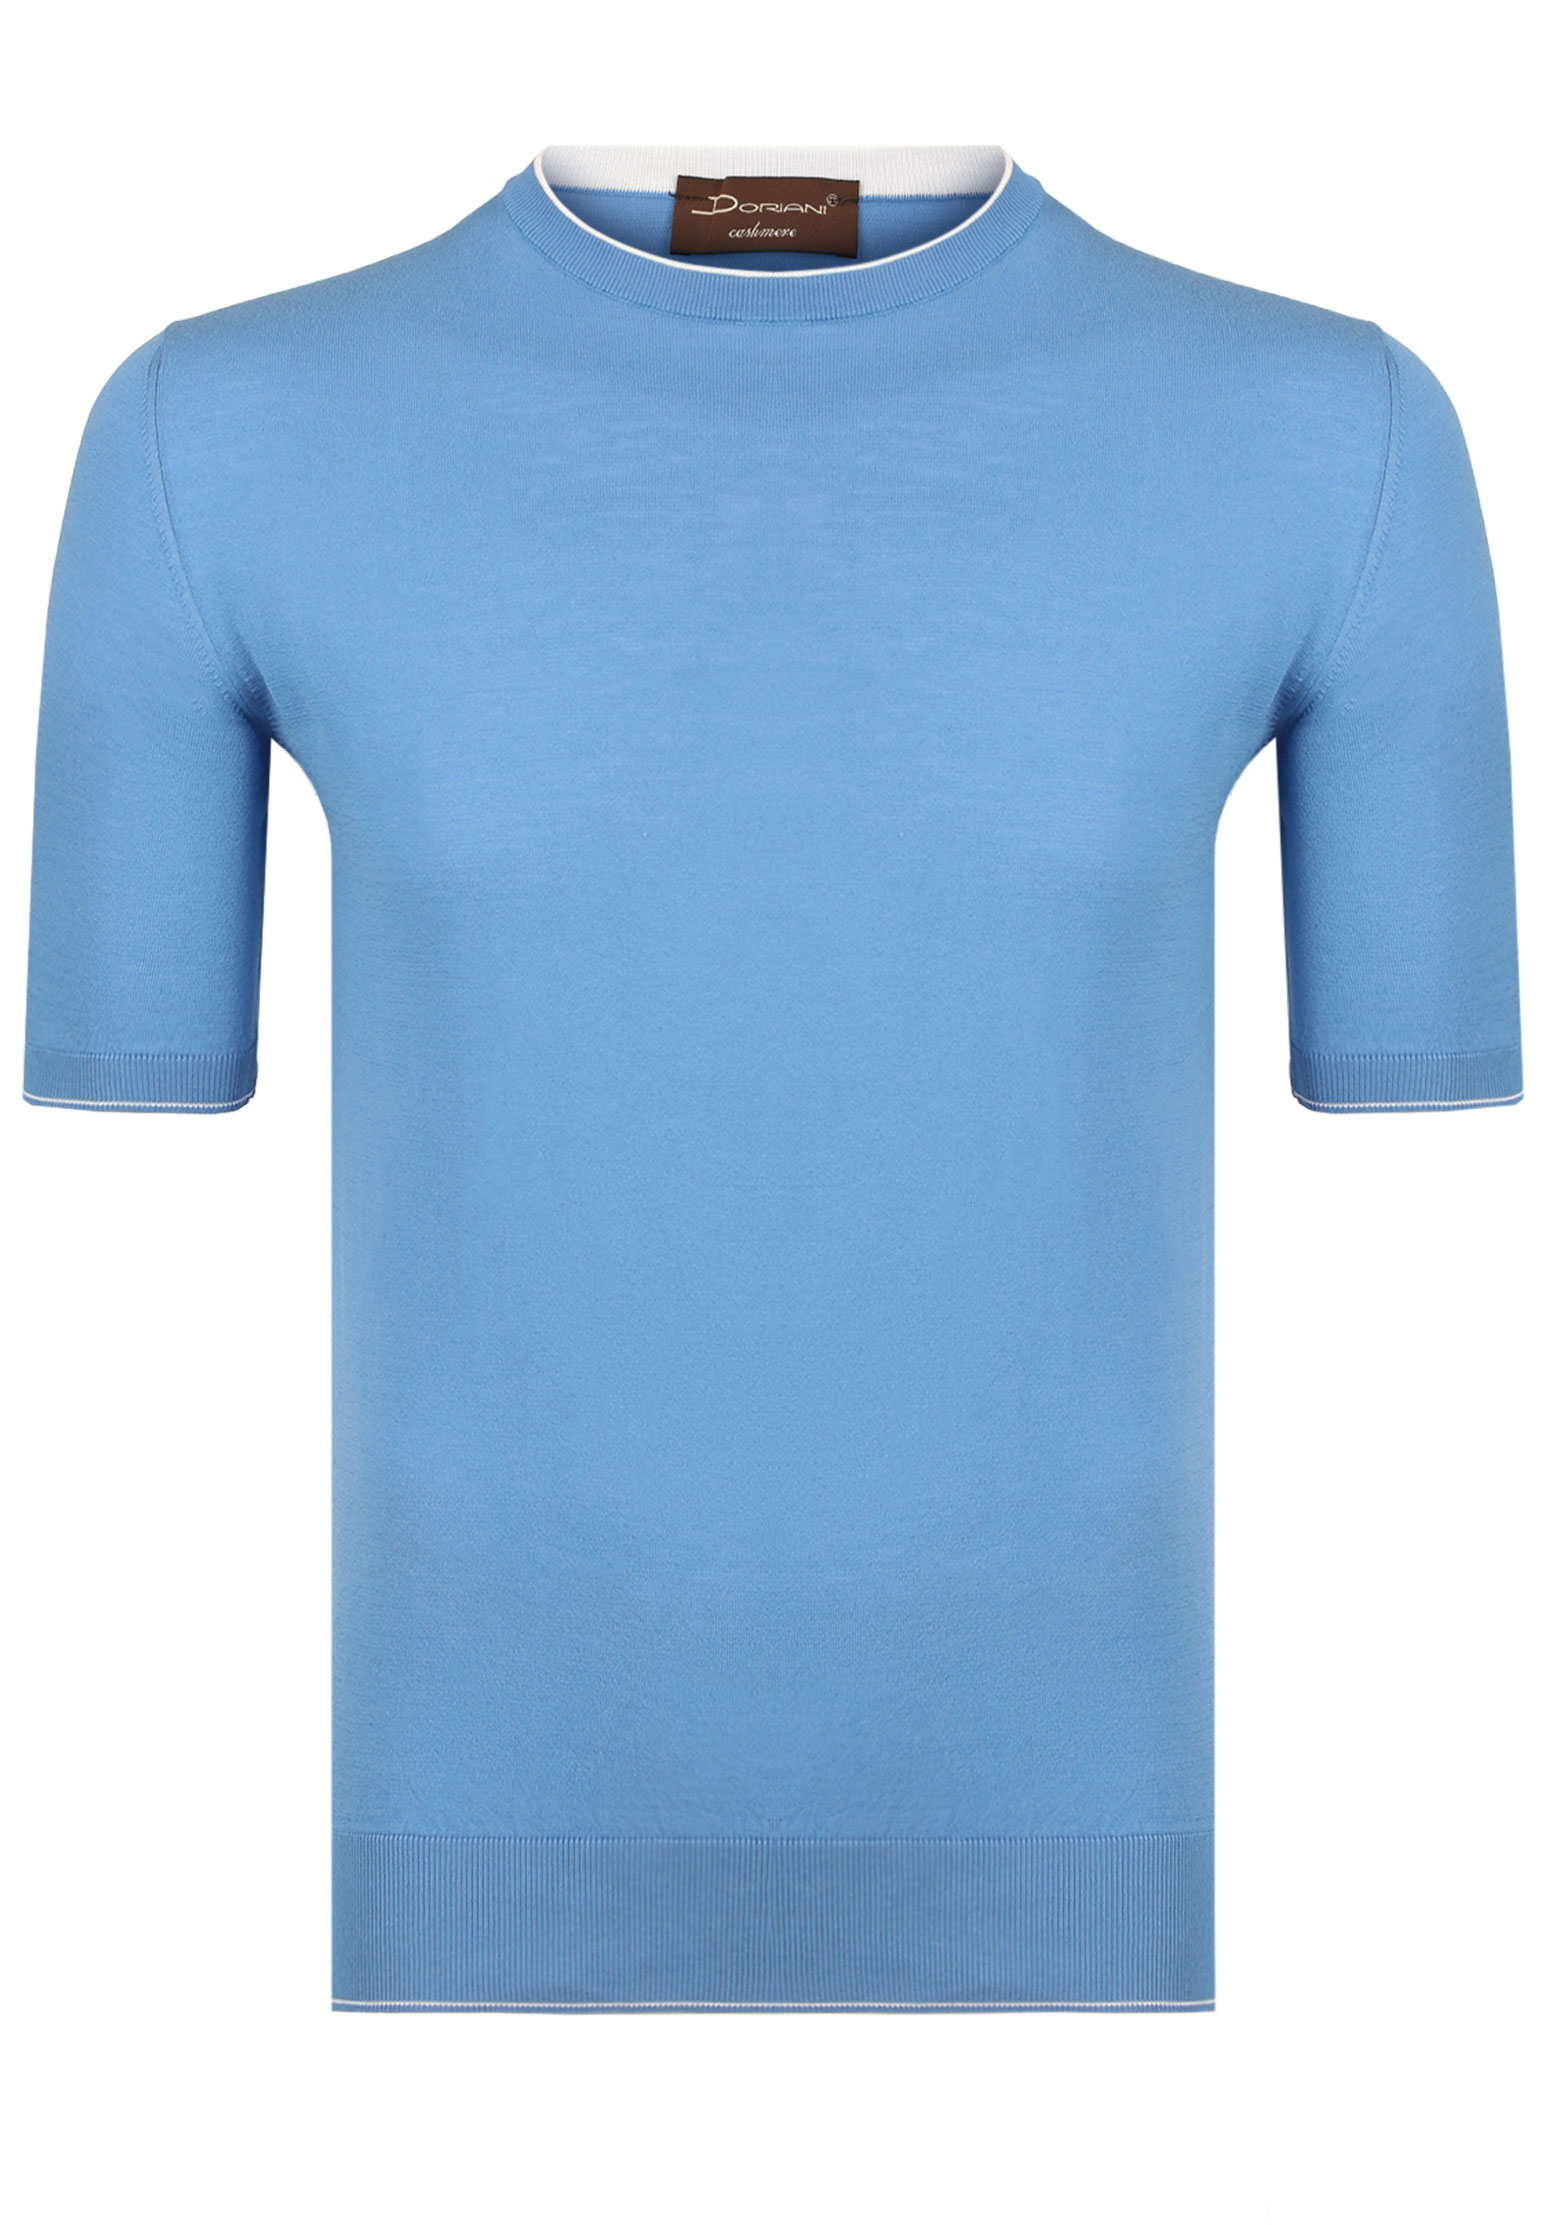 Пуловер DORIANI Голубой, размер 48